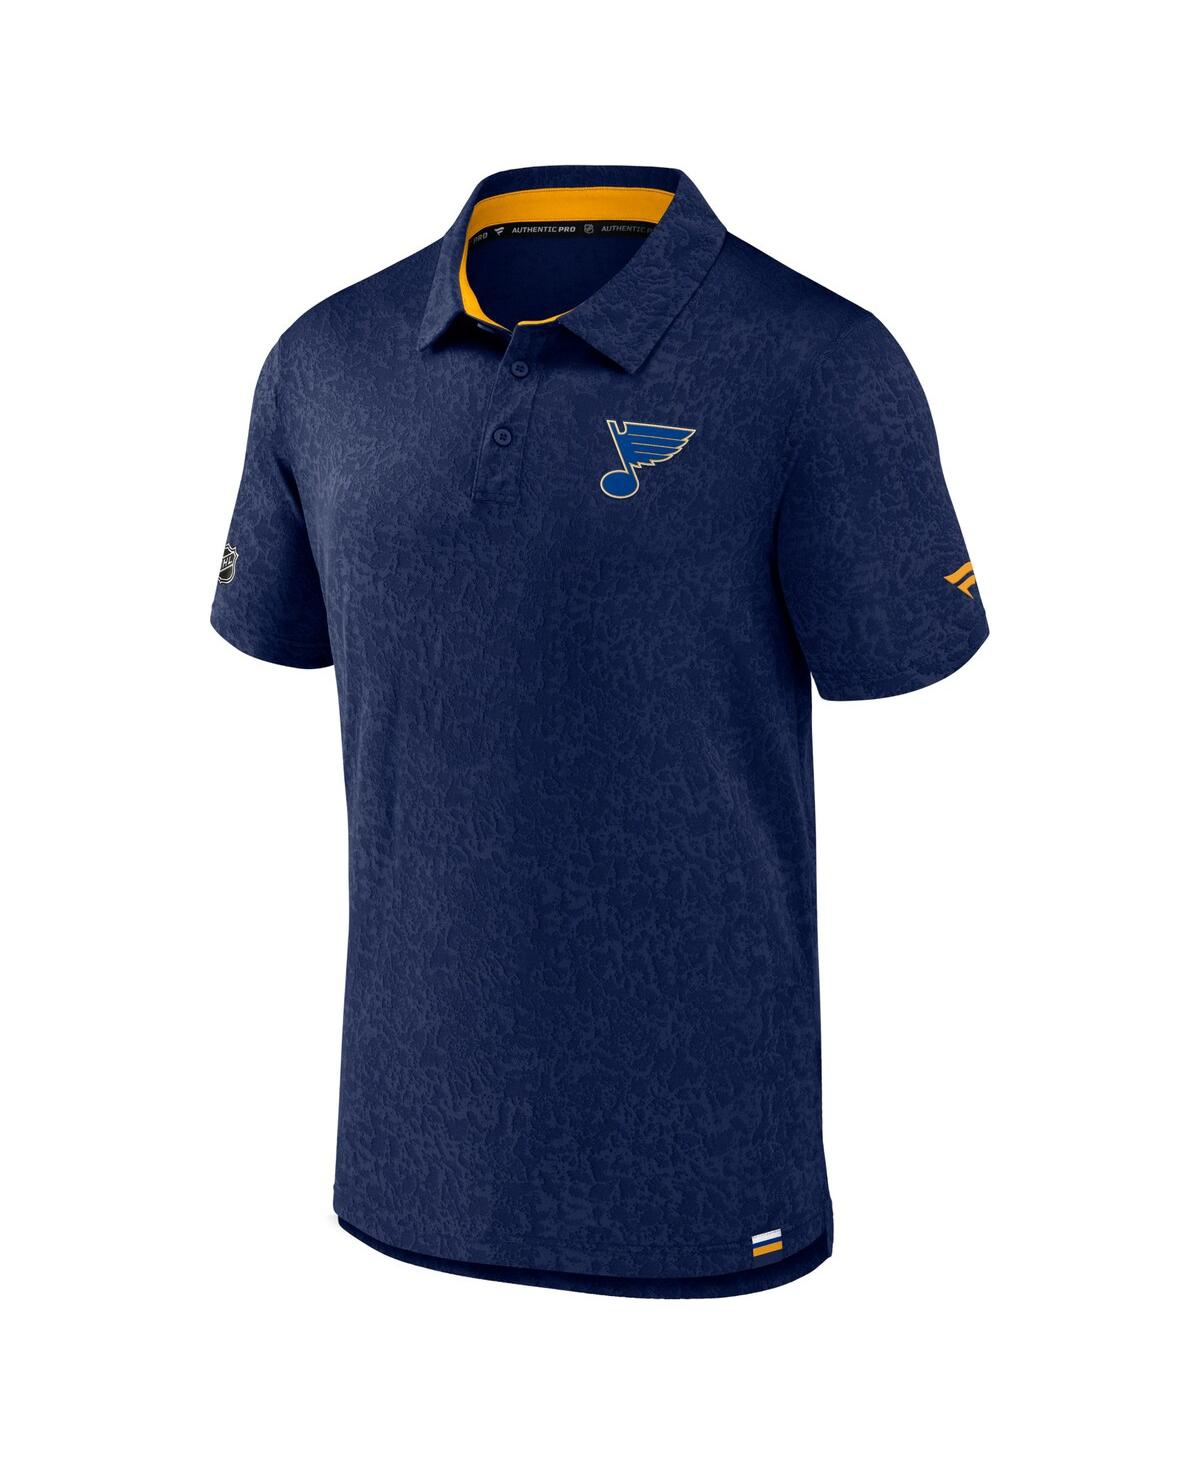 Shop Fanatics Men's  Navy St. Louis Blues Authentic Pro Jacquard Polo Shirt